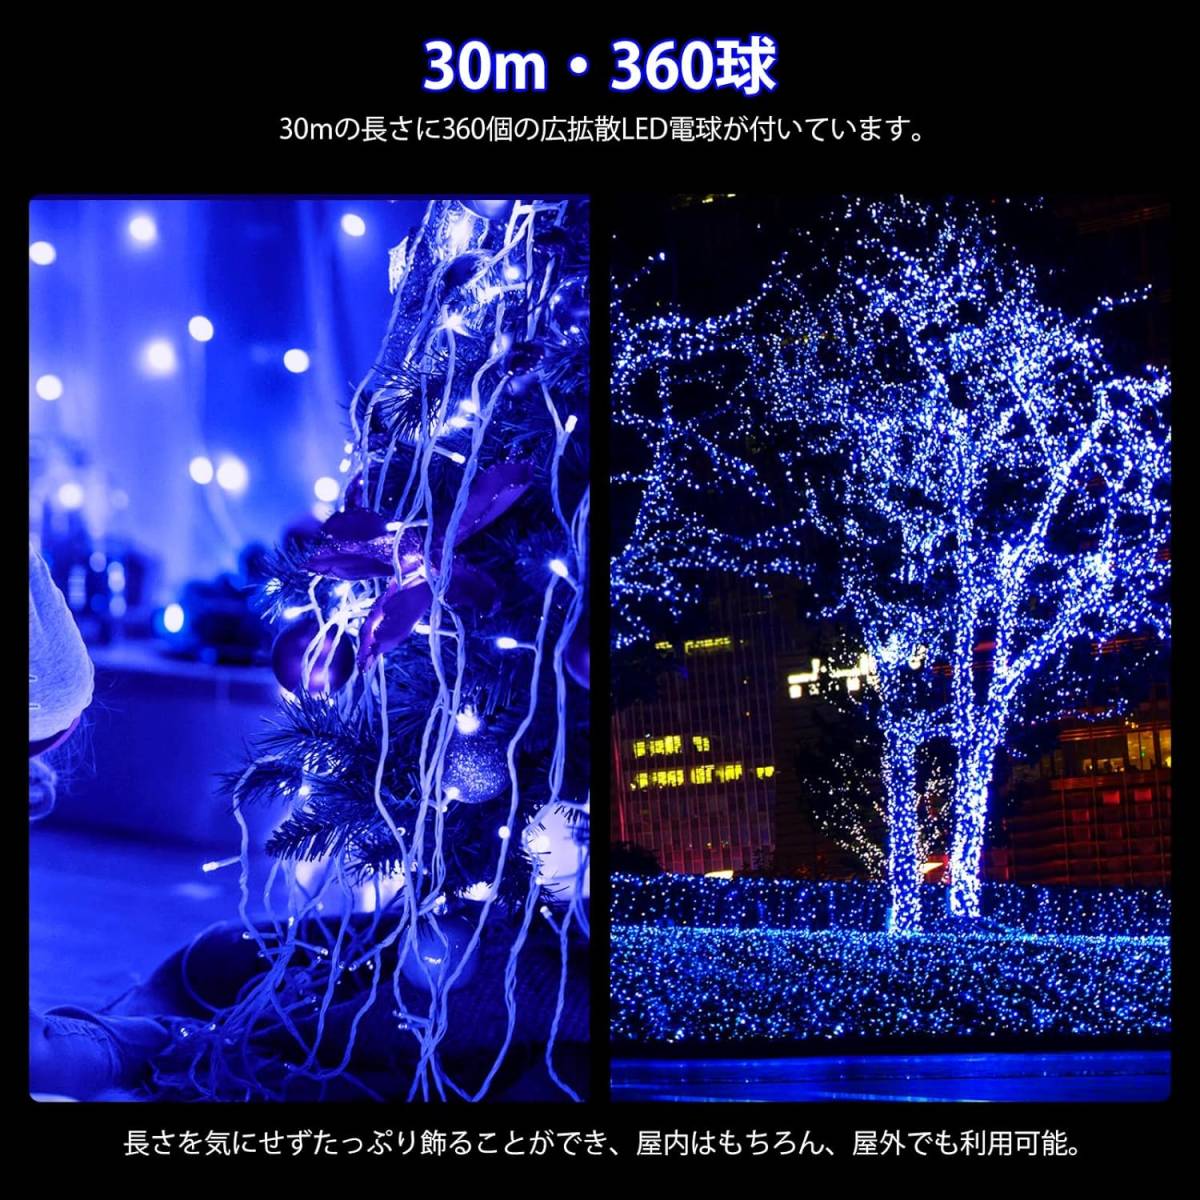 クリスマス LEDイルミネーションライト ブルー 360球 30m ストリングライト 存在感抜群 冬 庭 屋内 屋外 パーティー装飾 ツリー 雰囲気照明_画像2